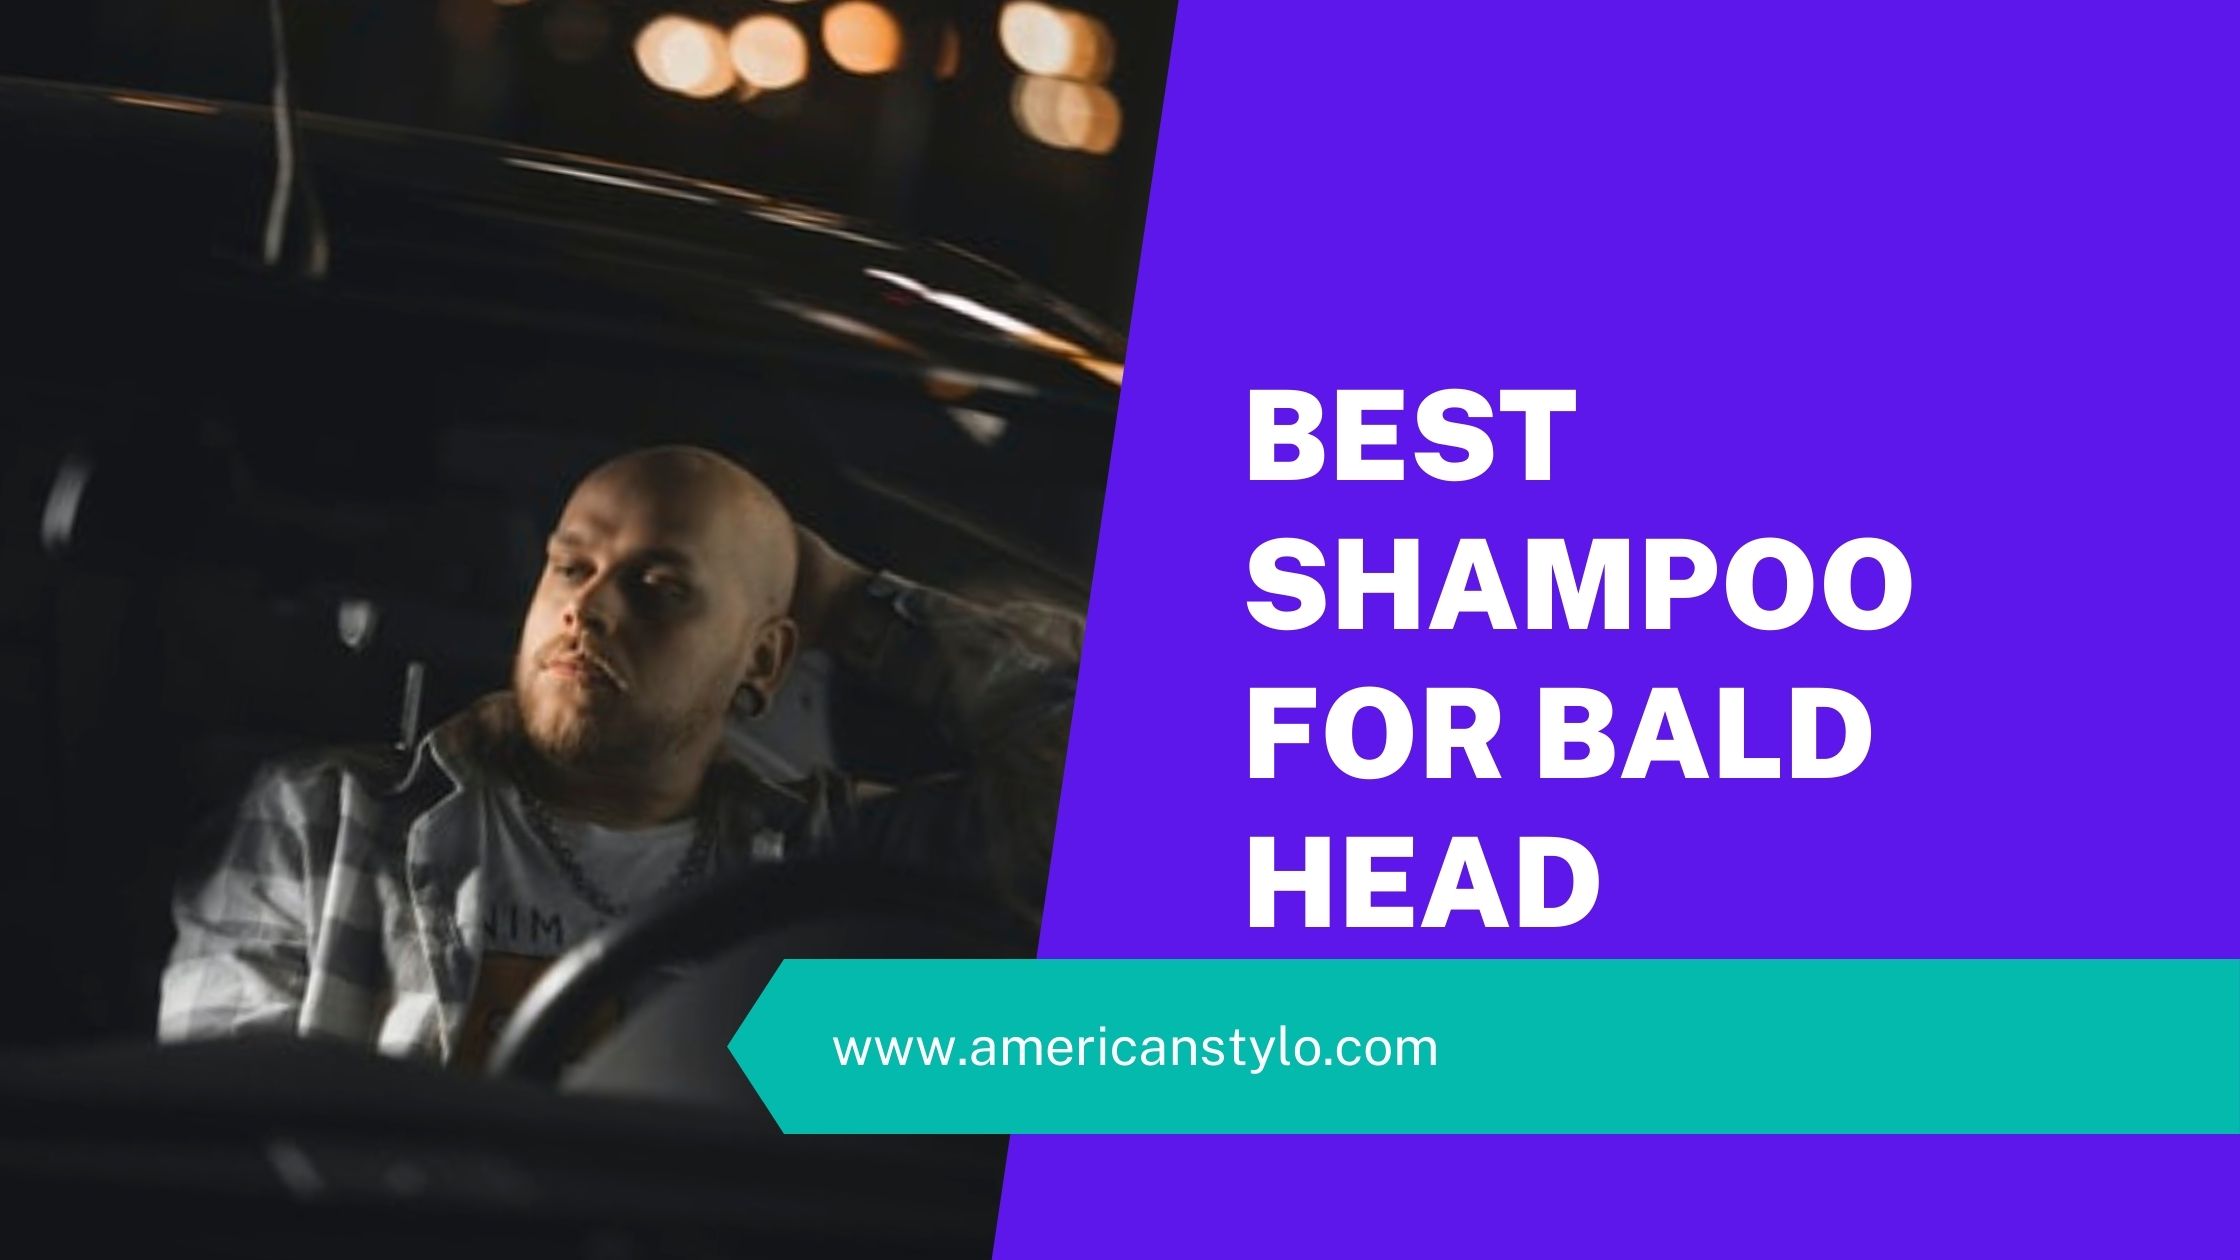 Shampoo for bald head